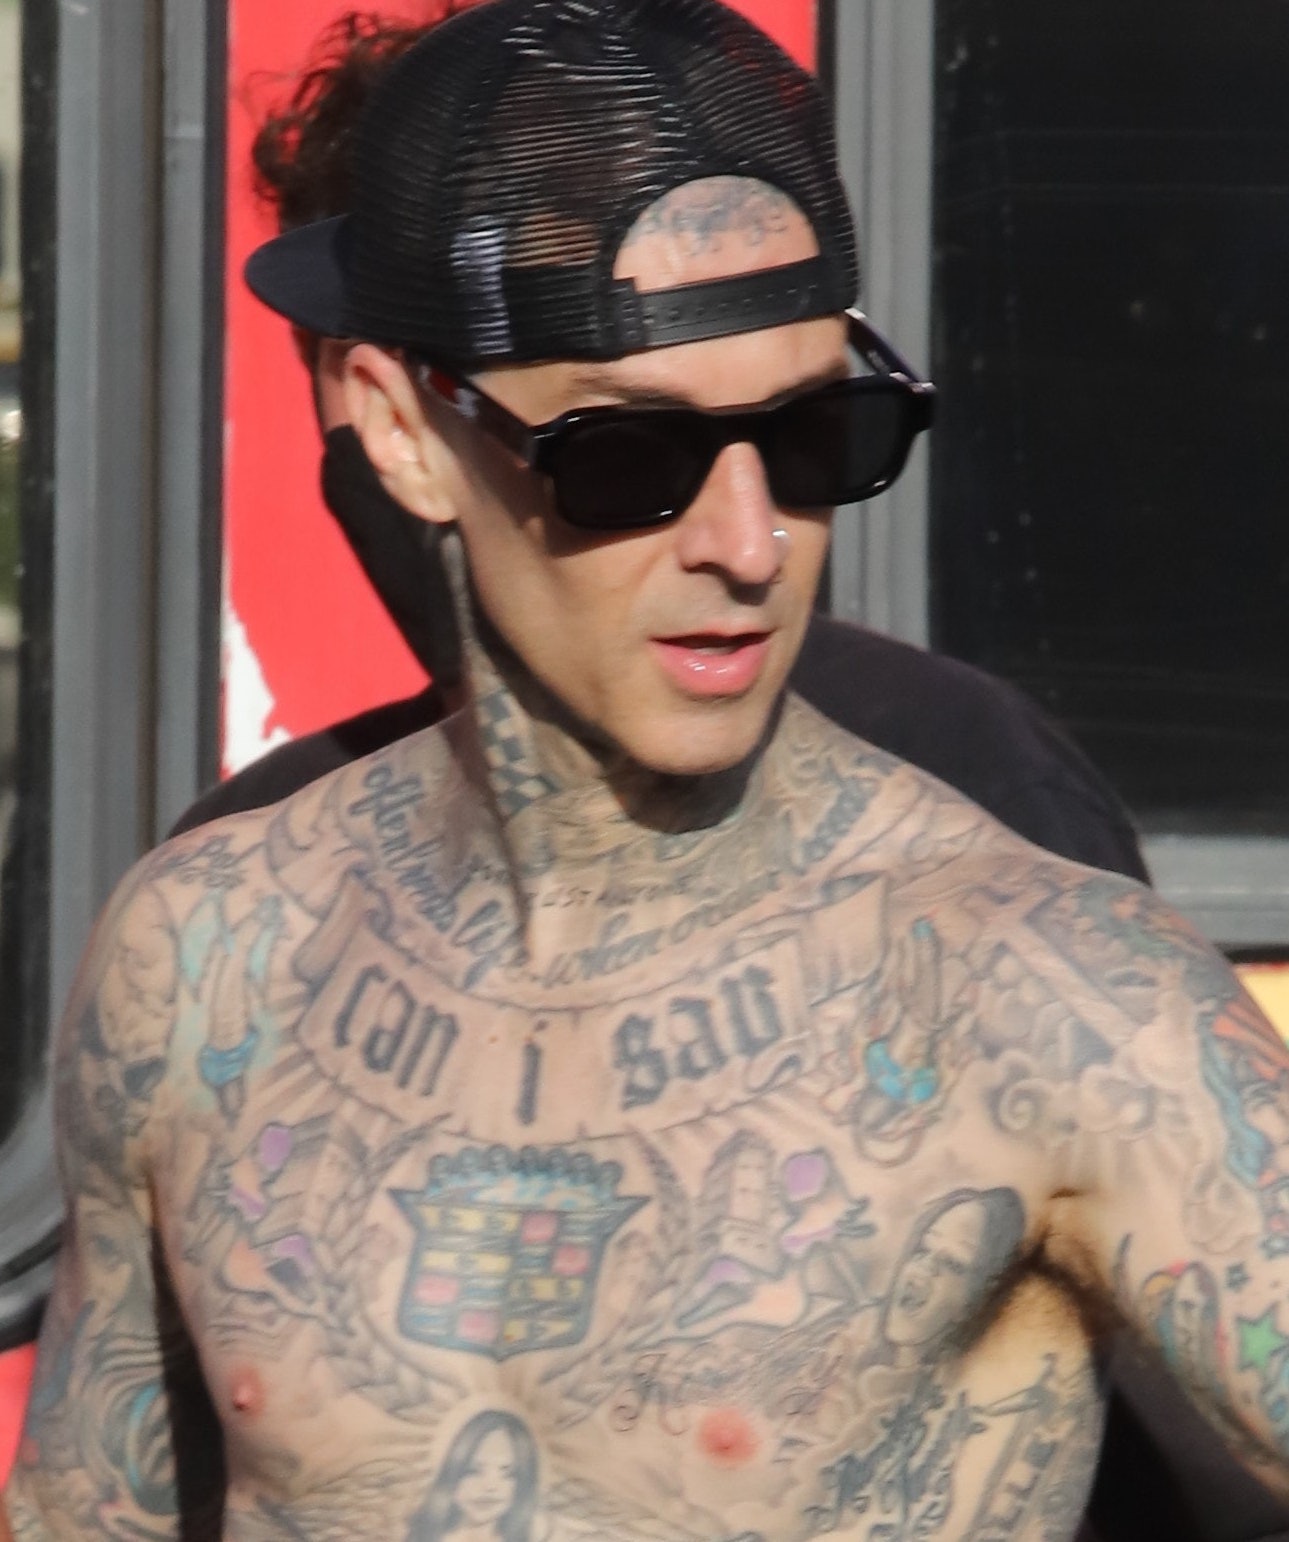 Το νέο τατουάζ στο στήθος του Travis Barker είναι ένας πολύ ξεκάθαρος φόρος τιμής στην Kourtney Kardashian